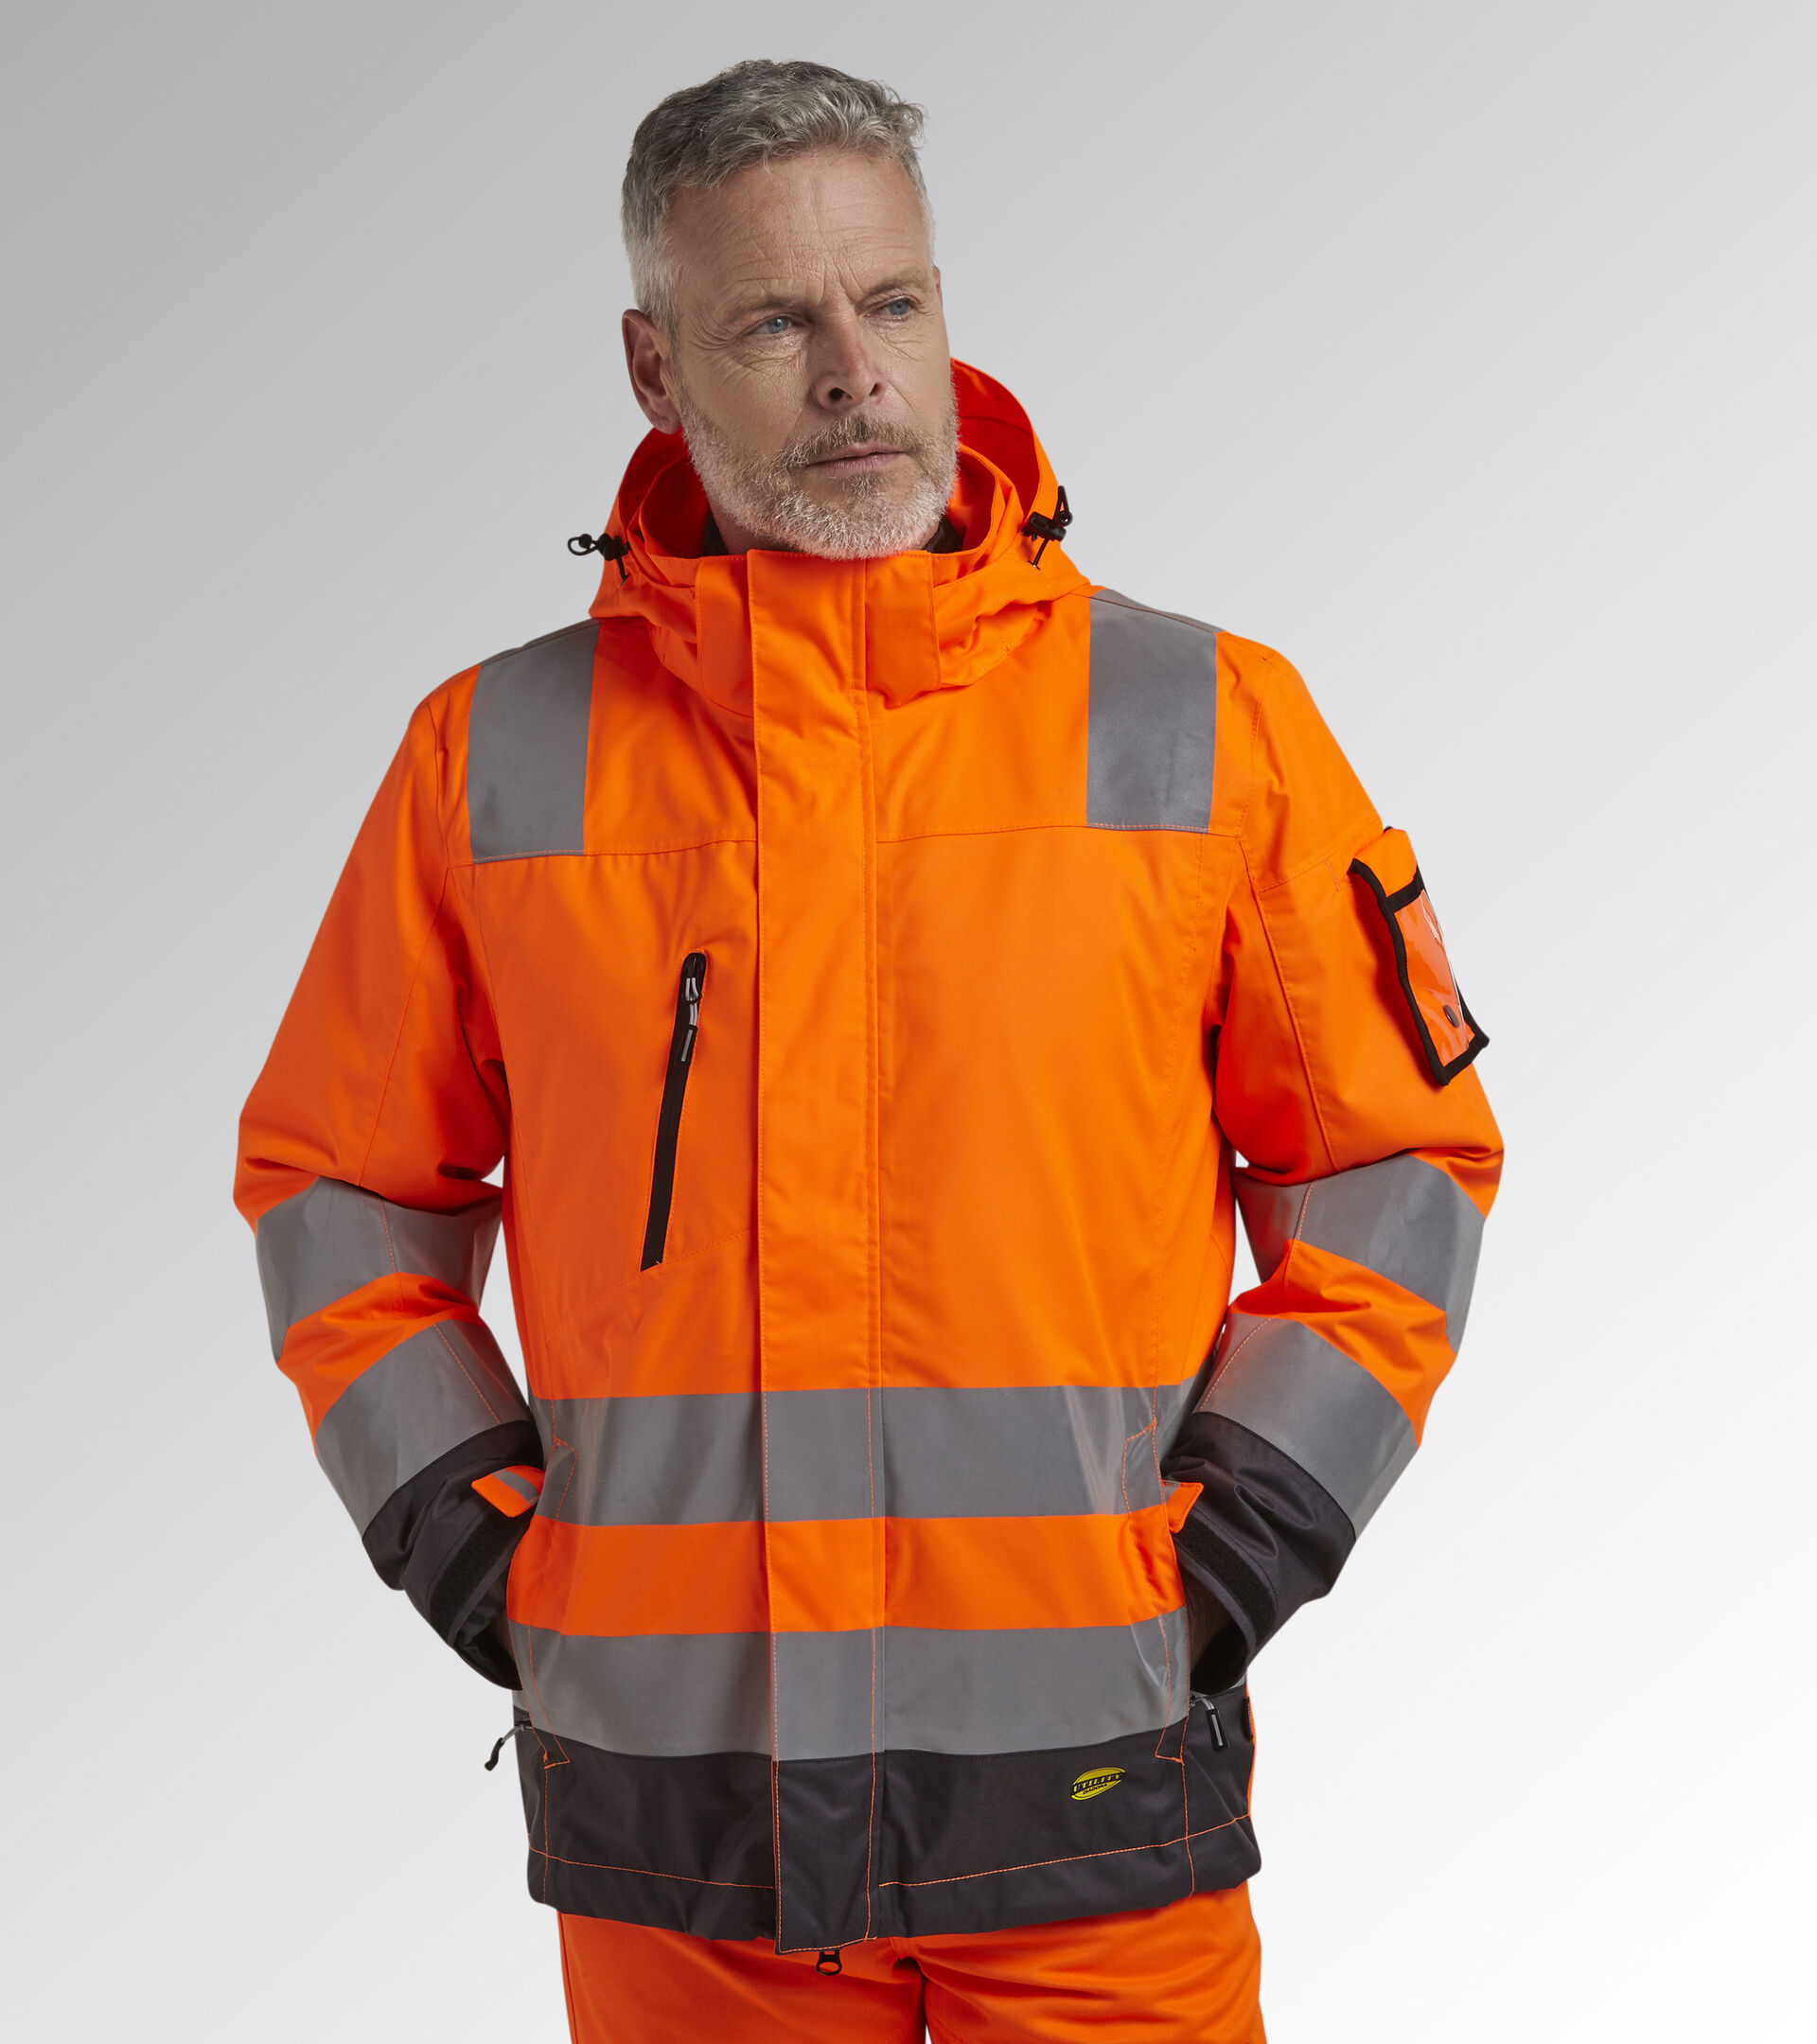 Work jacket HV JACKET ISO 20471 FLUORESCENT ORANGE ISO20471 - Utility